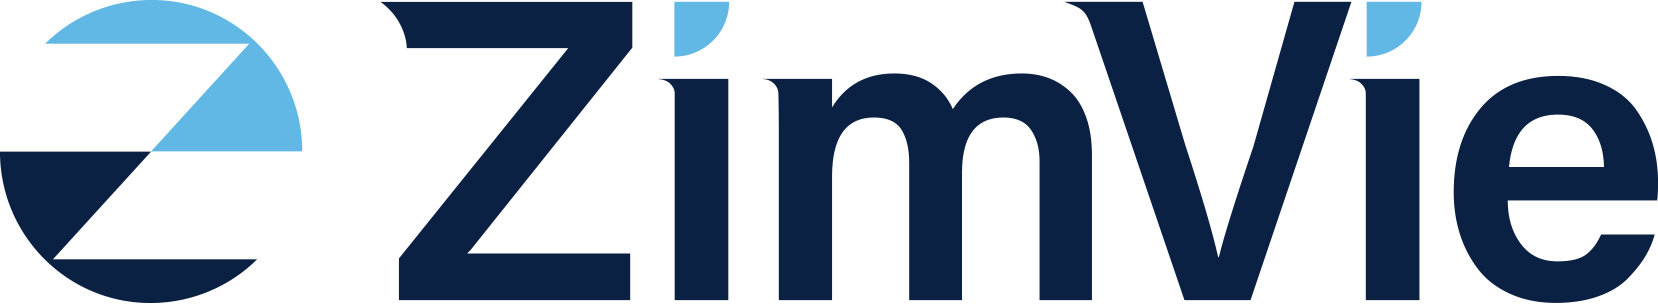 ZimVie Logo